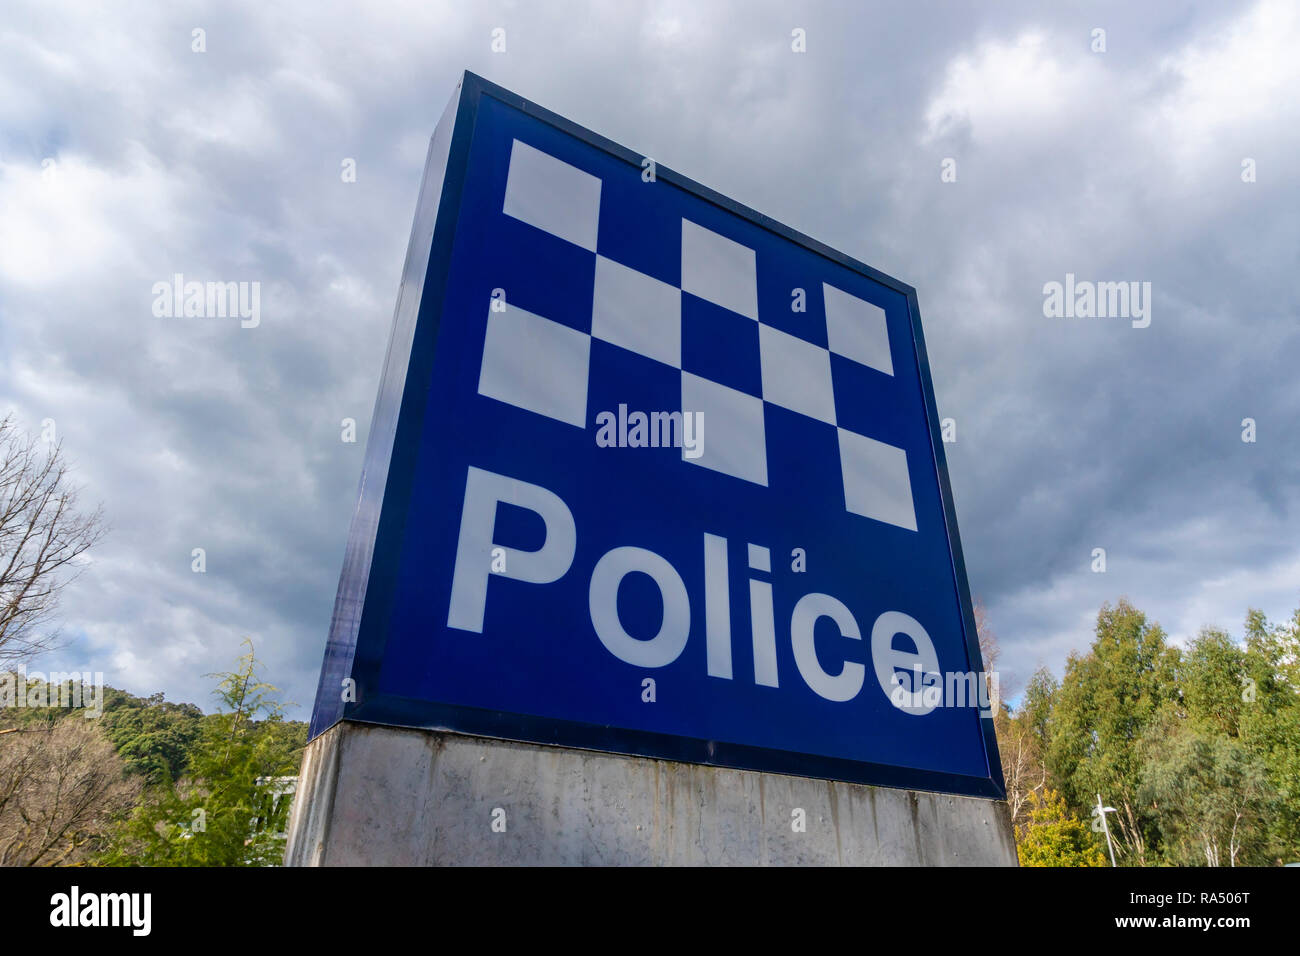 Police station sign in Australia Stock Photo